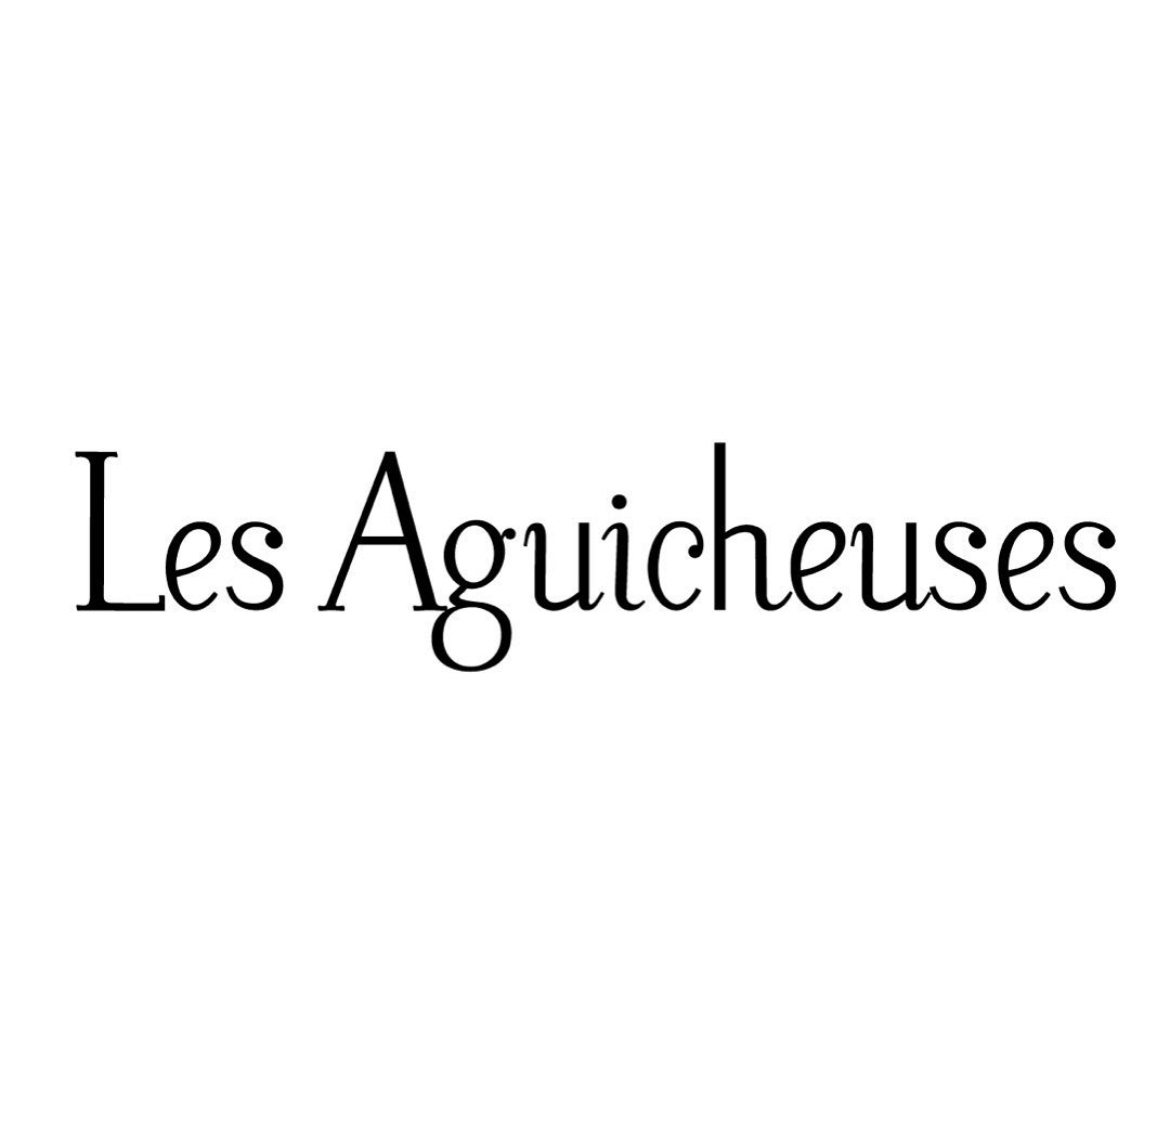 LES AGUICHEUSES logo